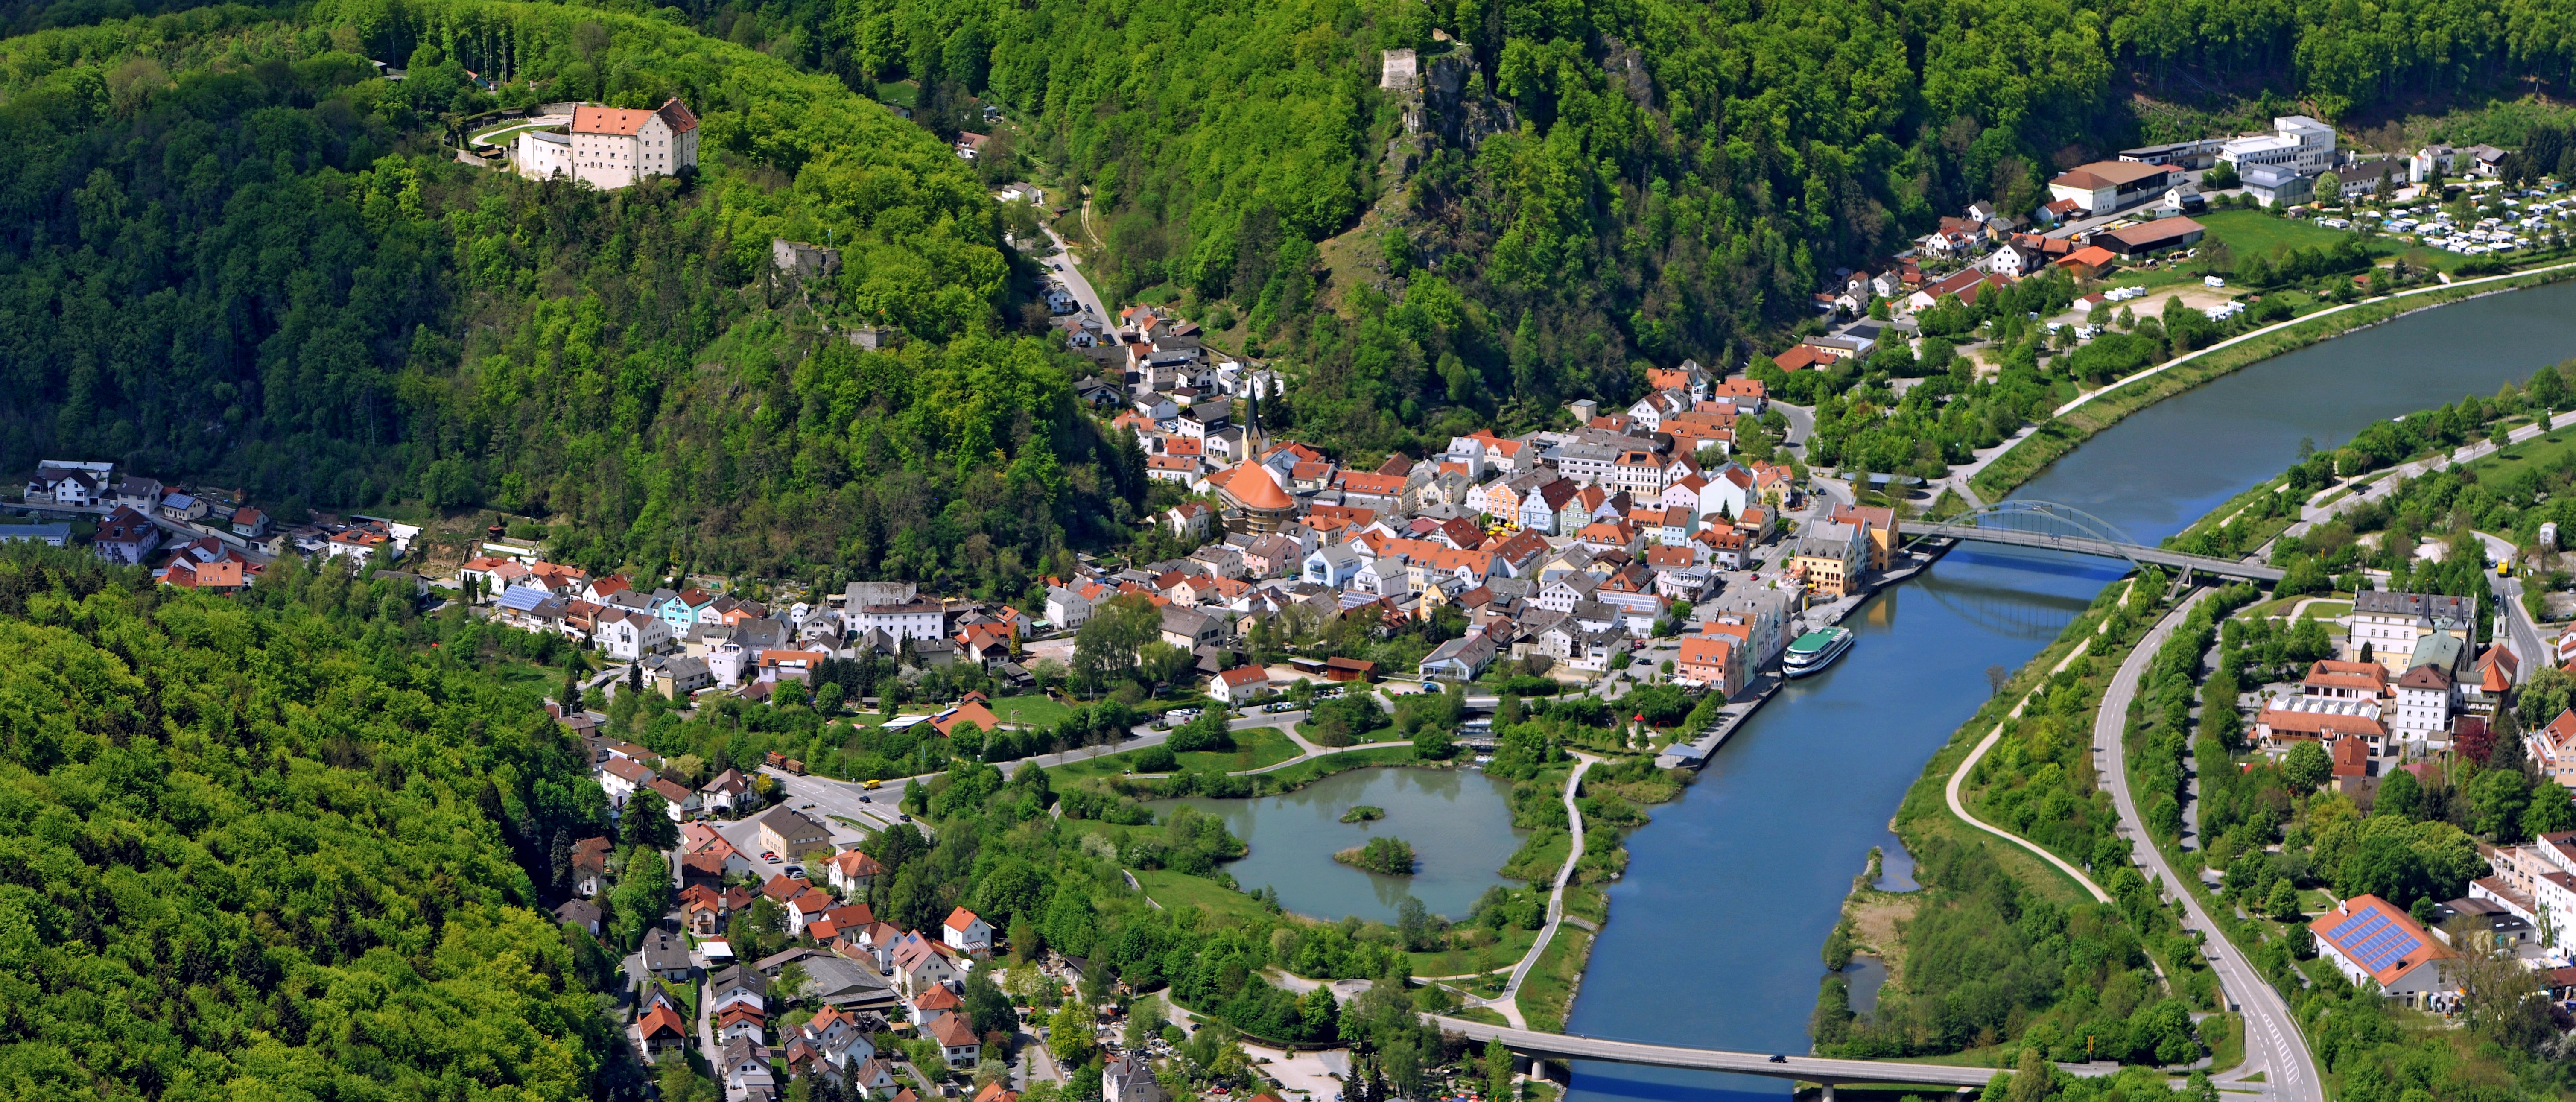 Auf diesem Bild sieht man eine Luftaufnahme von Riedenburg